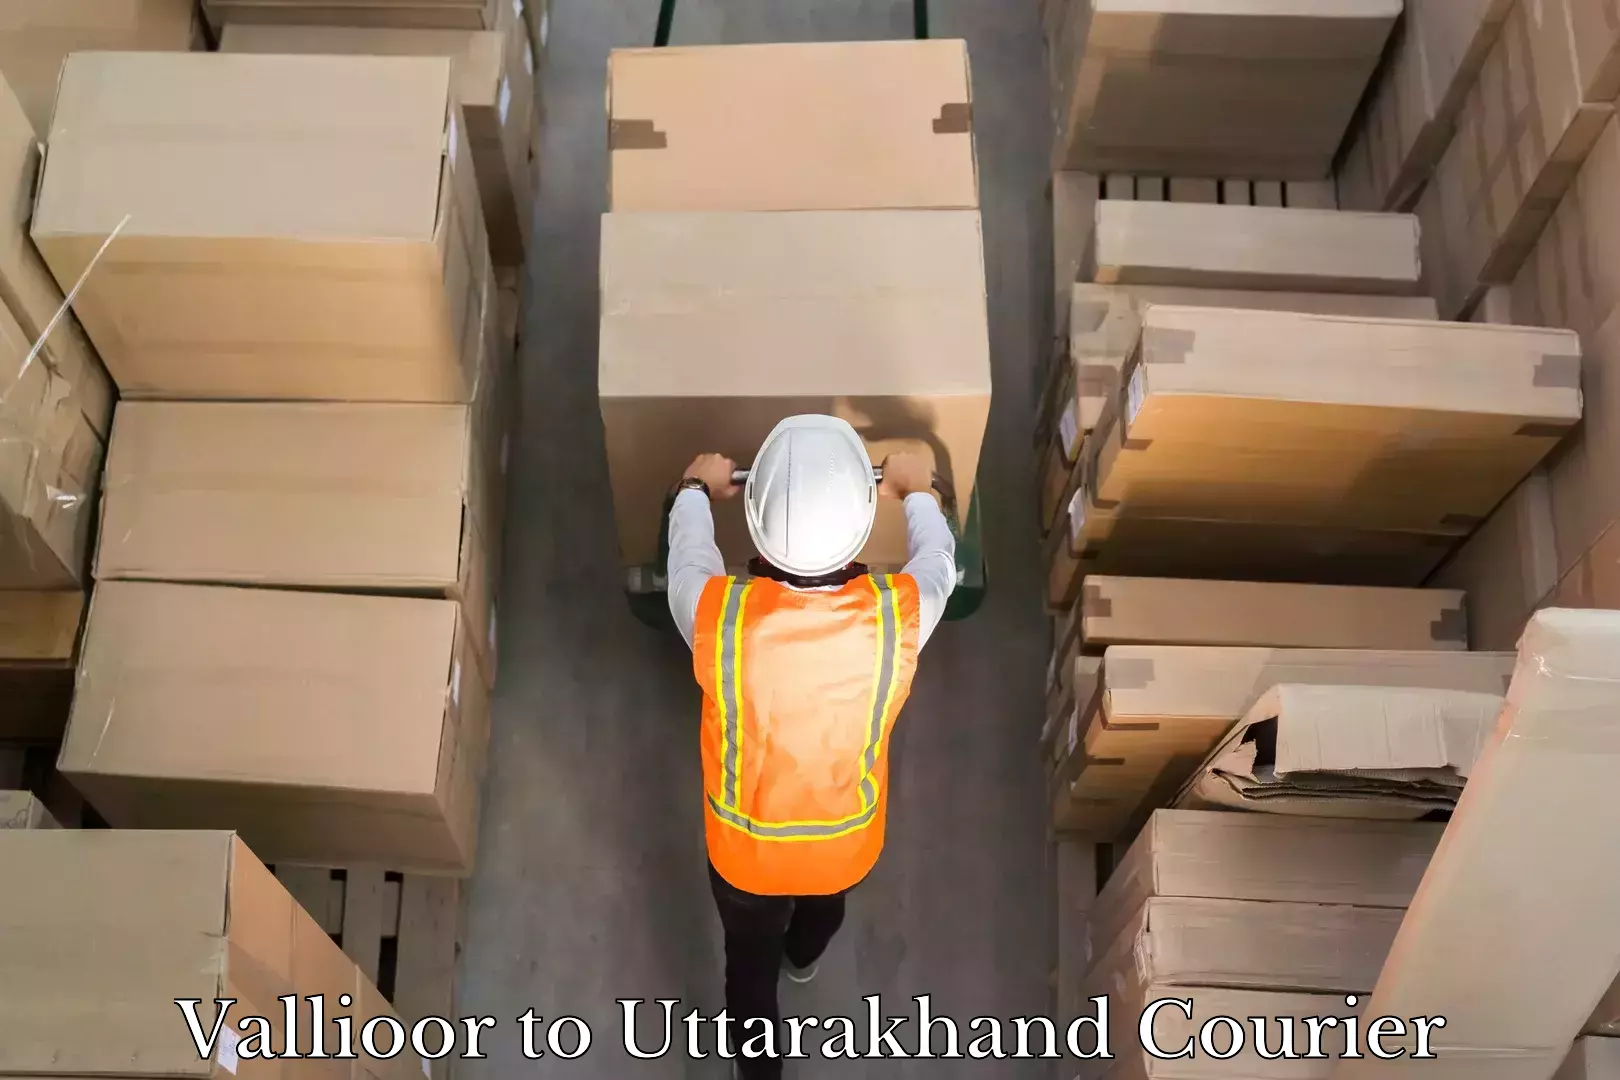 Parcel service for businesses Vallioor to Uttarakhand